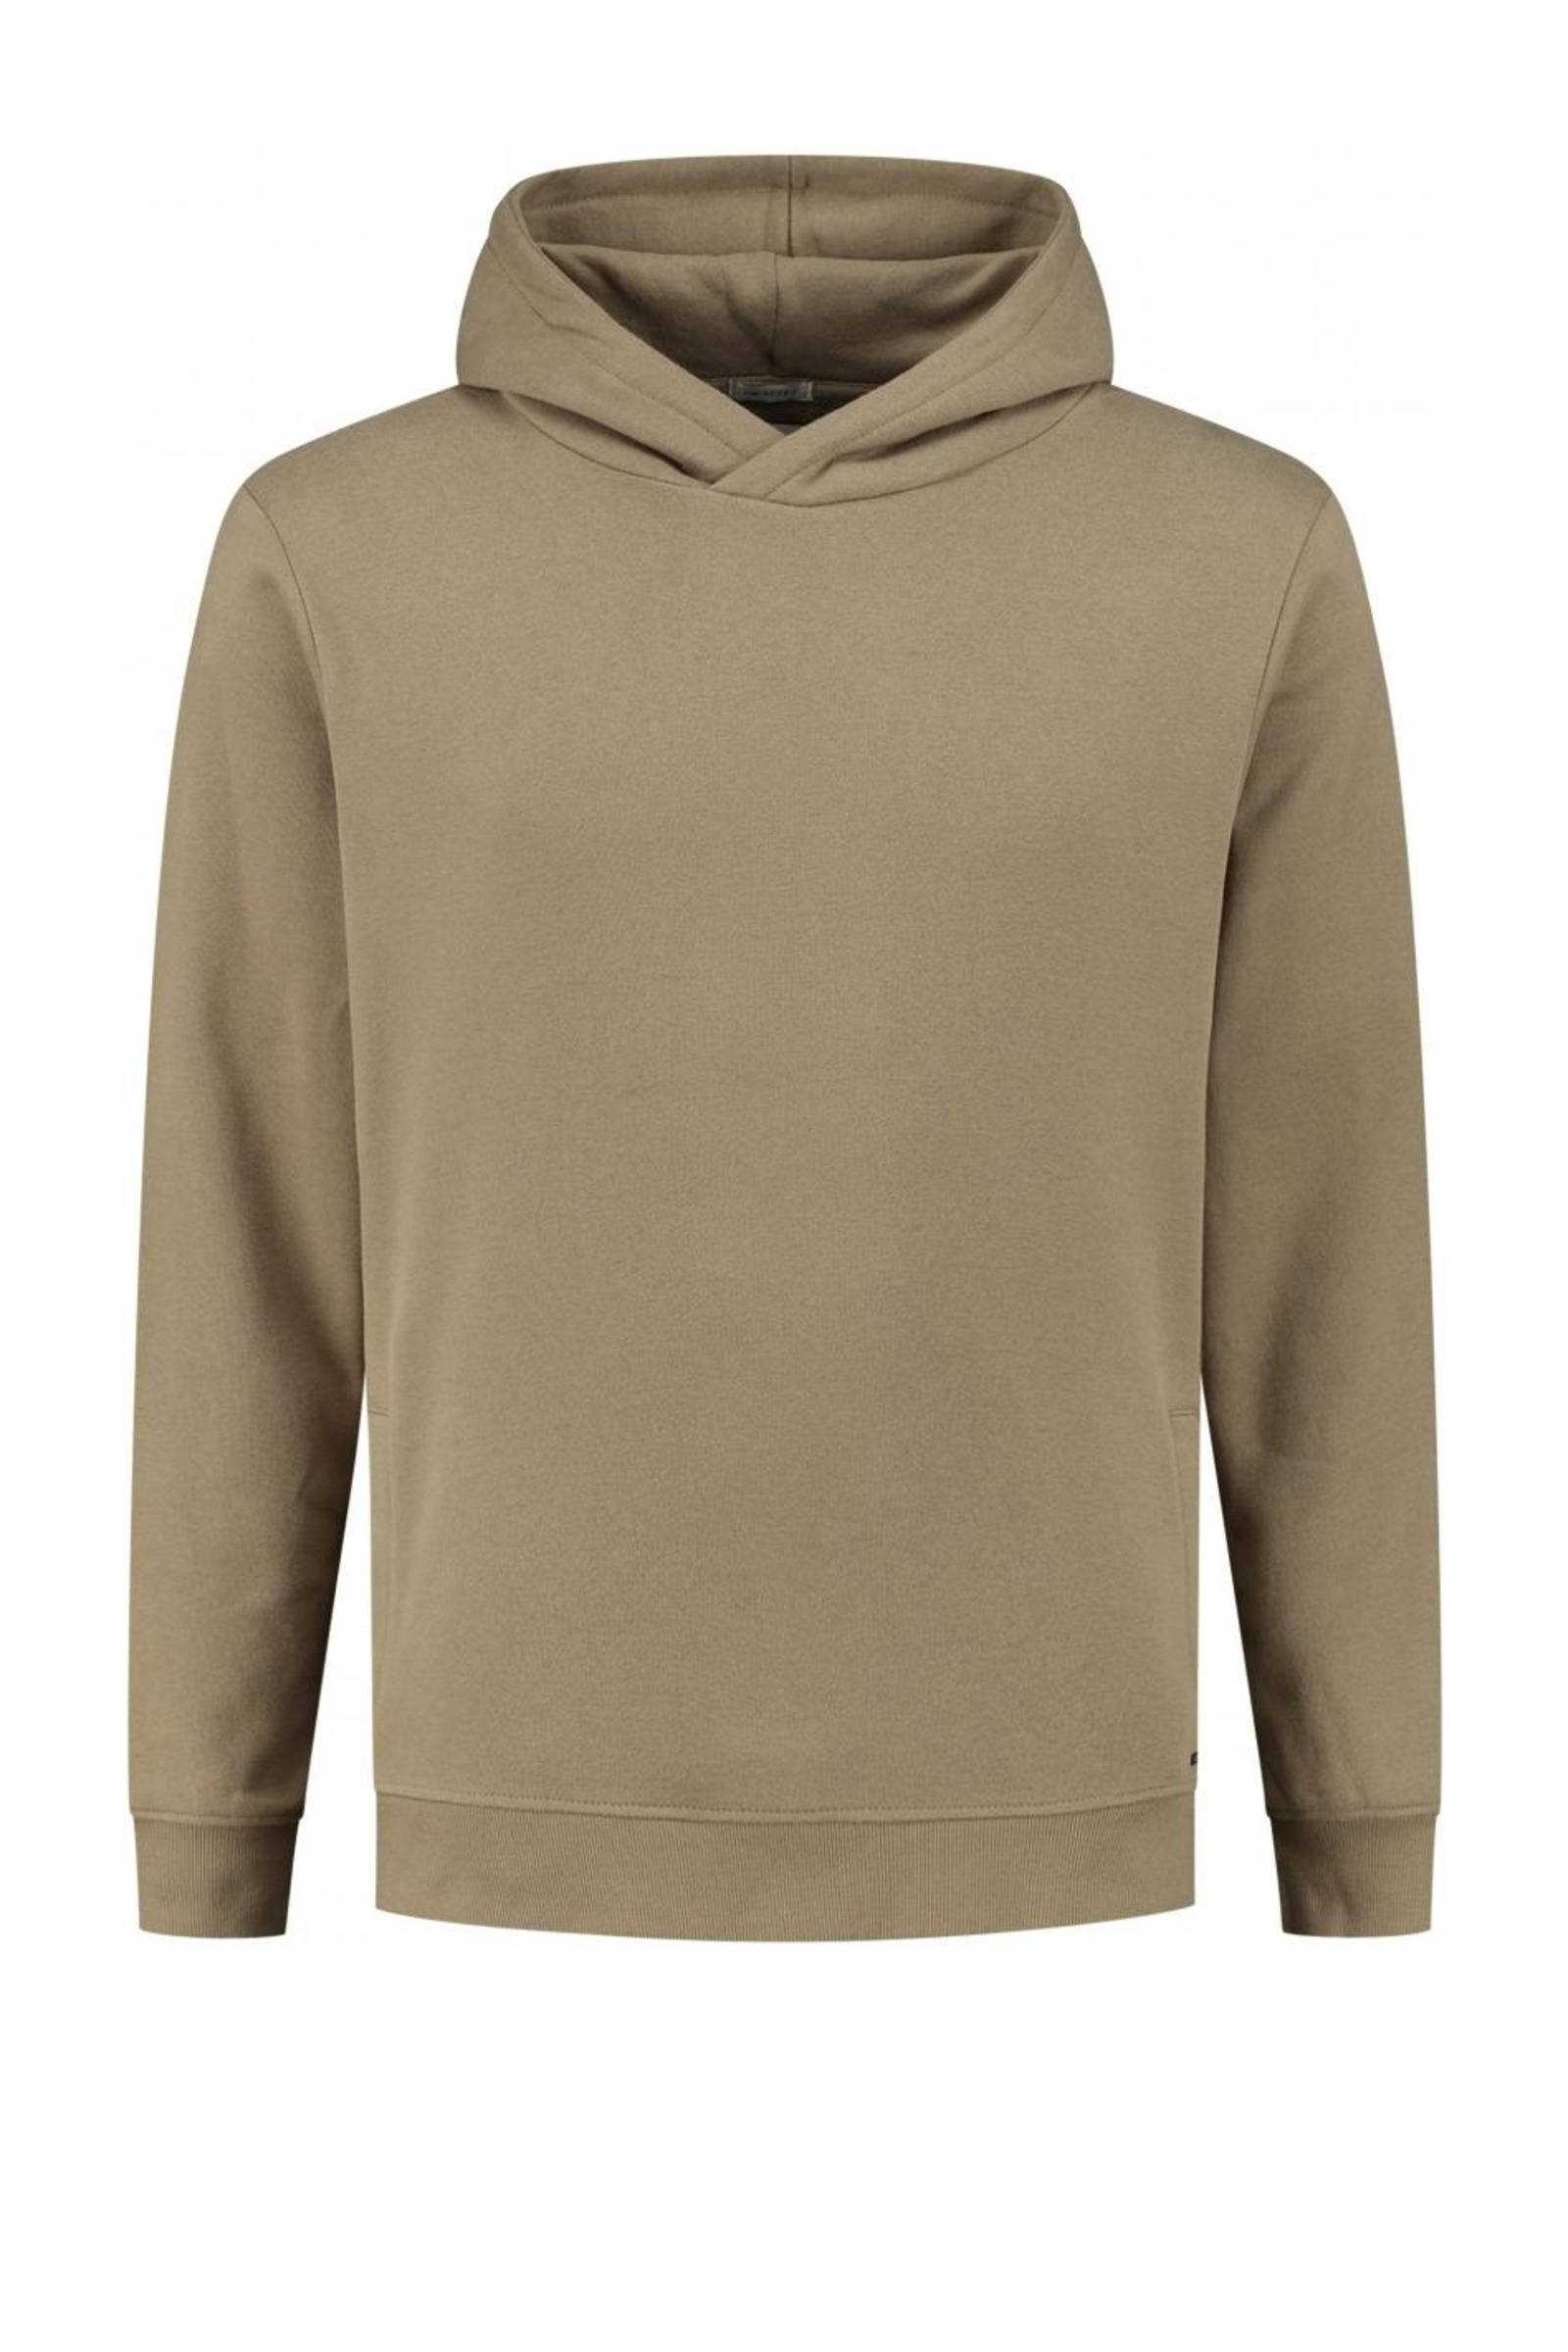 Dstrezzed Hooded sweater jimmy peached khaki(211421 250 ) online kopen